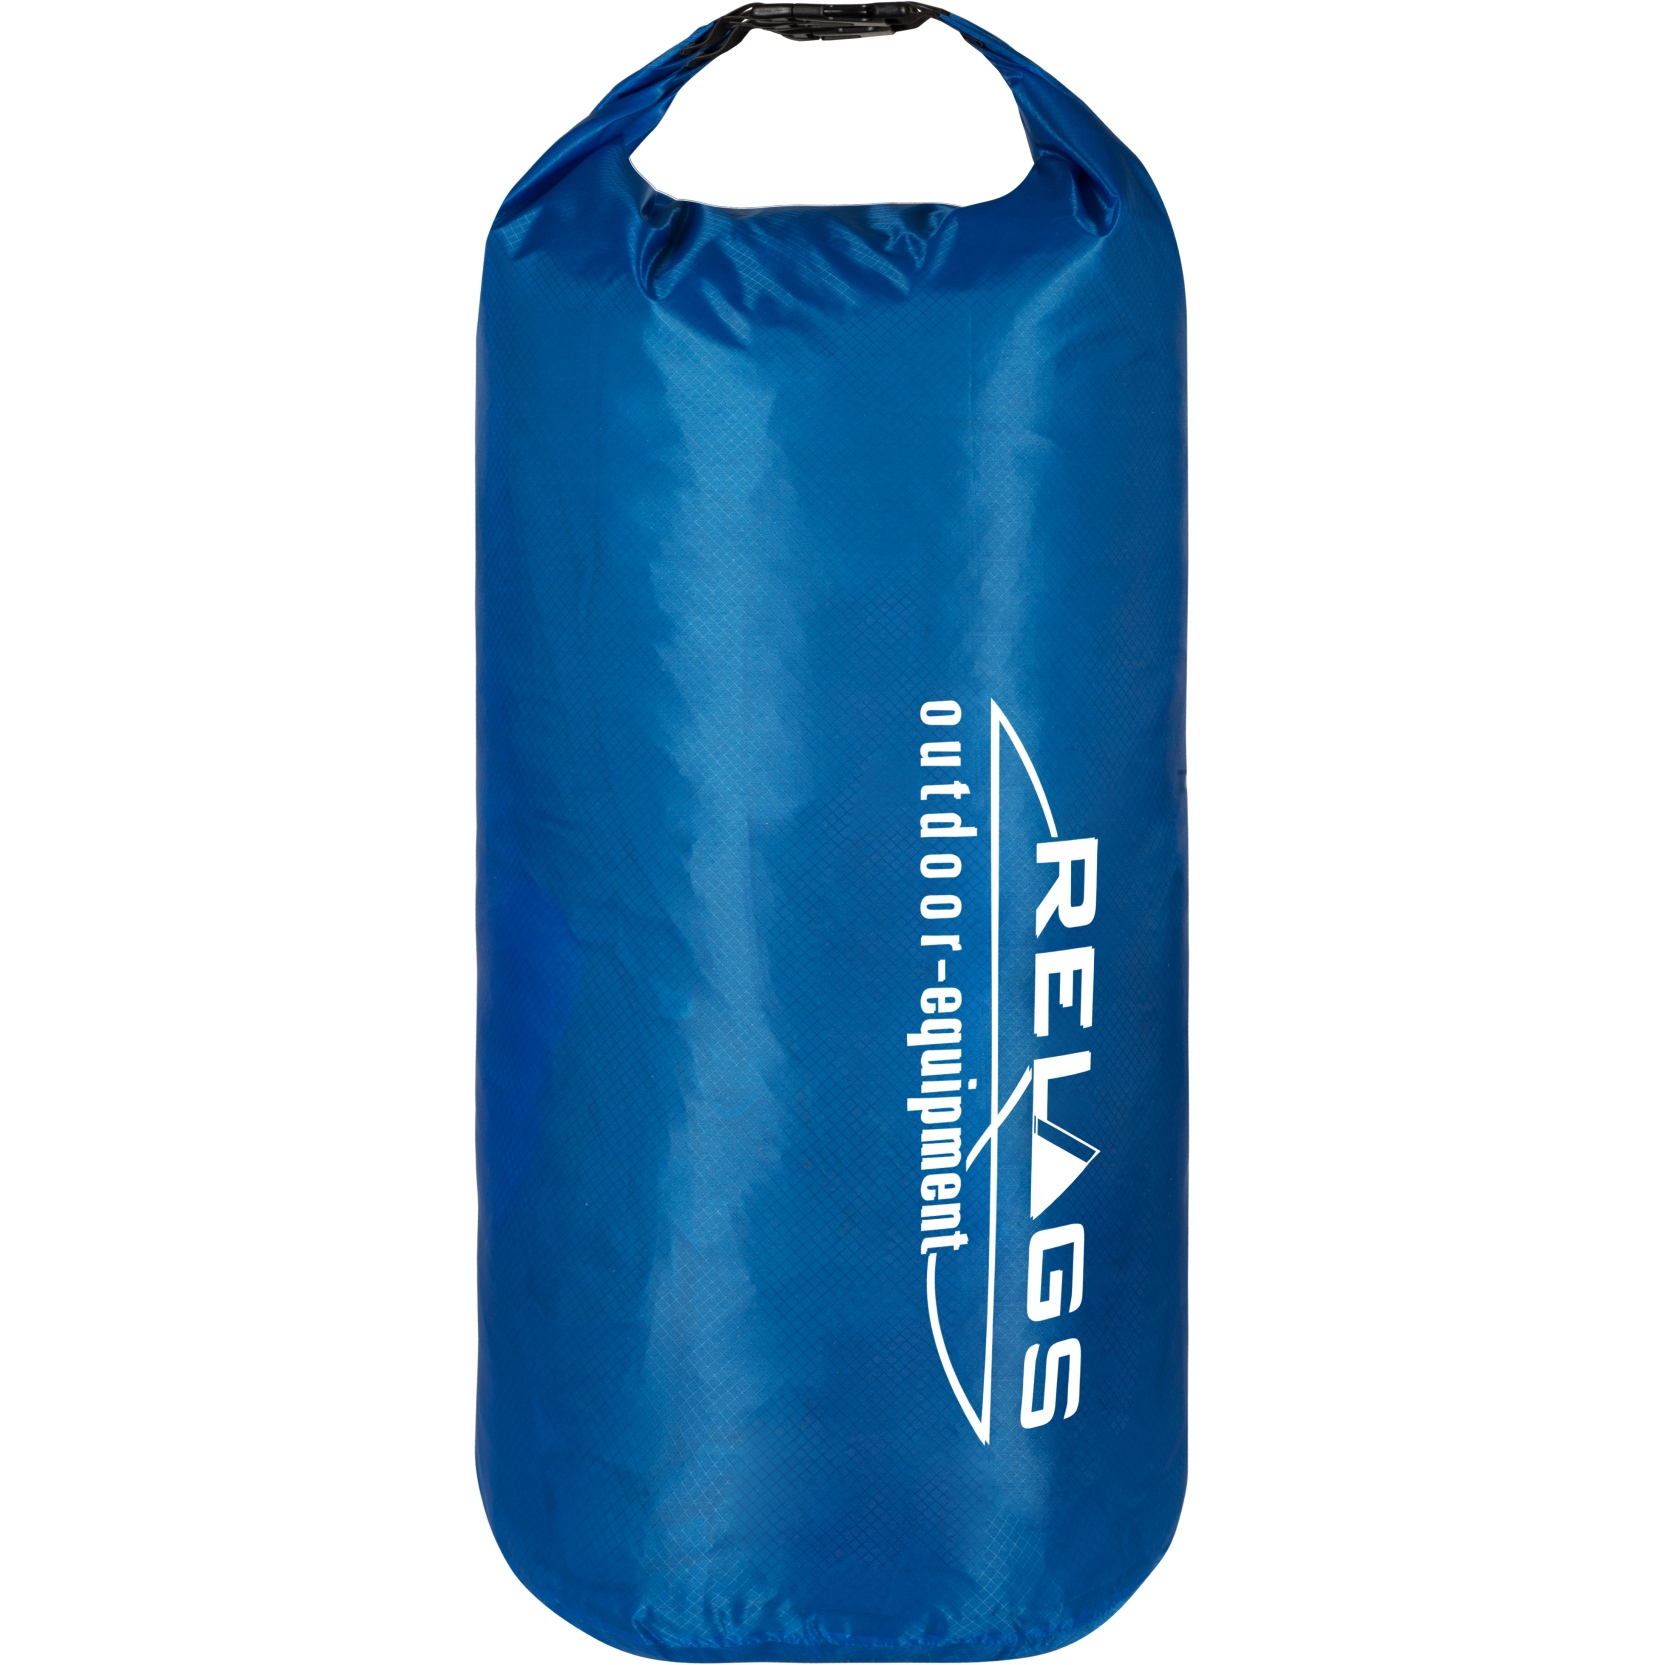 Productfoto van basic NATURE | Relags Dry Bag 210T - 20L - blauw